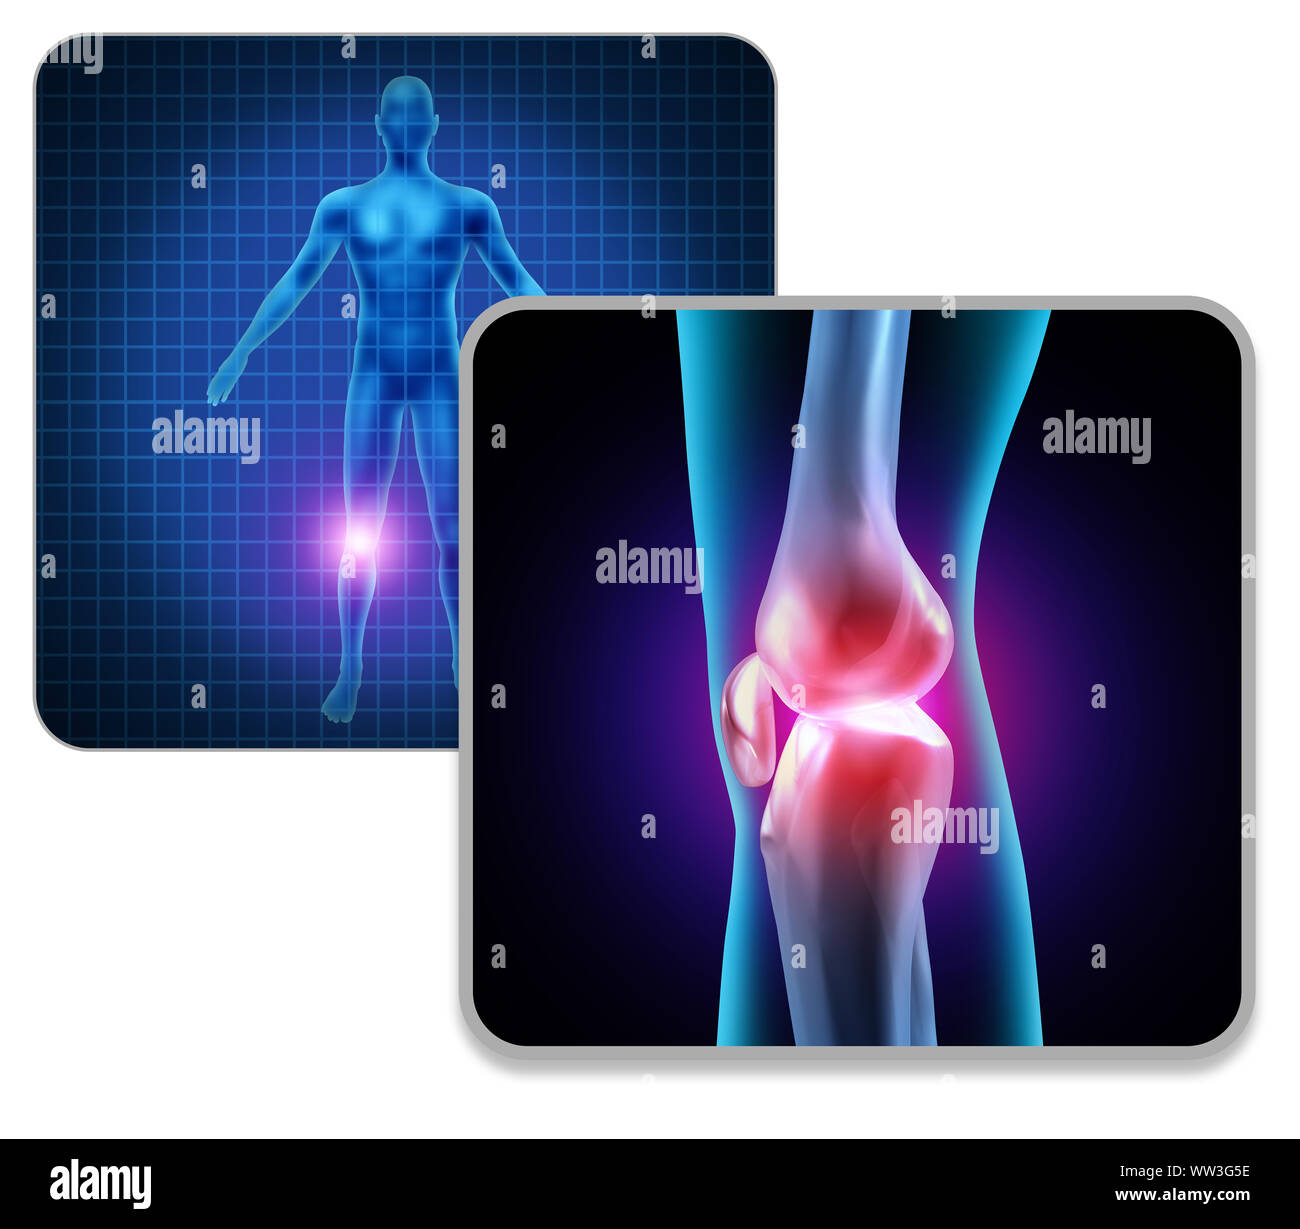 Menschlichen Knie Körper Gelenkschmerzen Konzept wie ein Skelett und Muskel Anatomie des Körpers als schmerzhafte Beinverletzung oder Arthritis Krankheit Symbol. Stockfoto